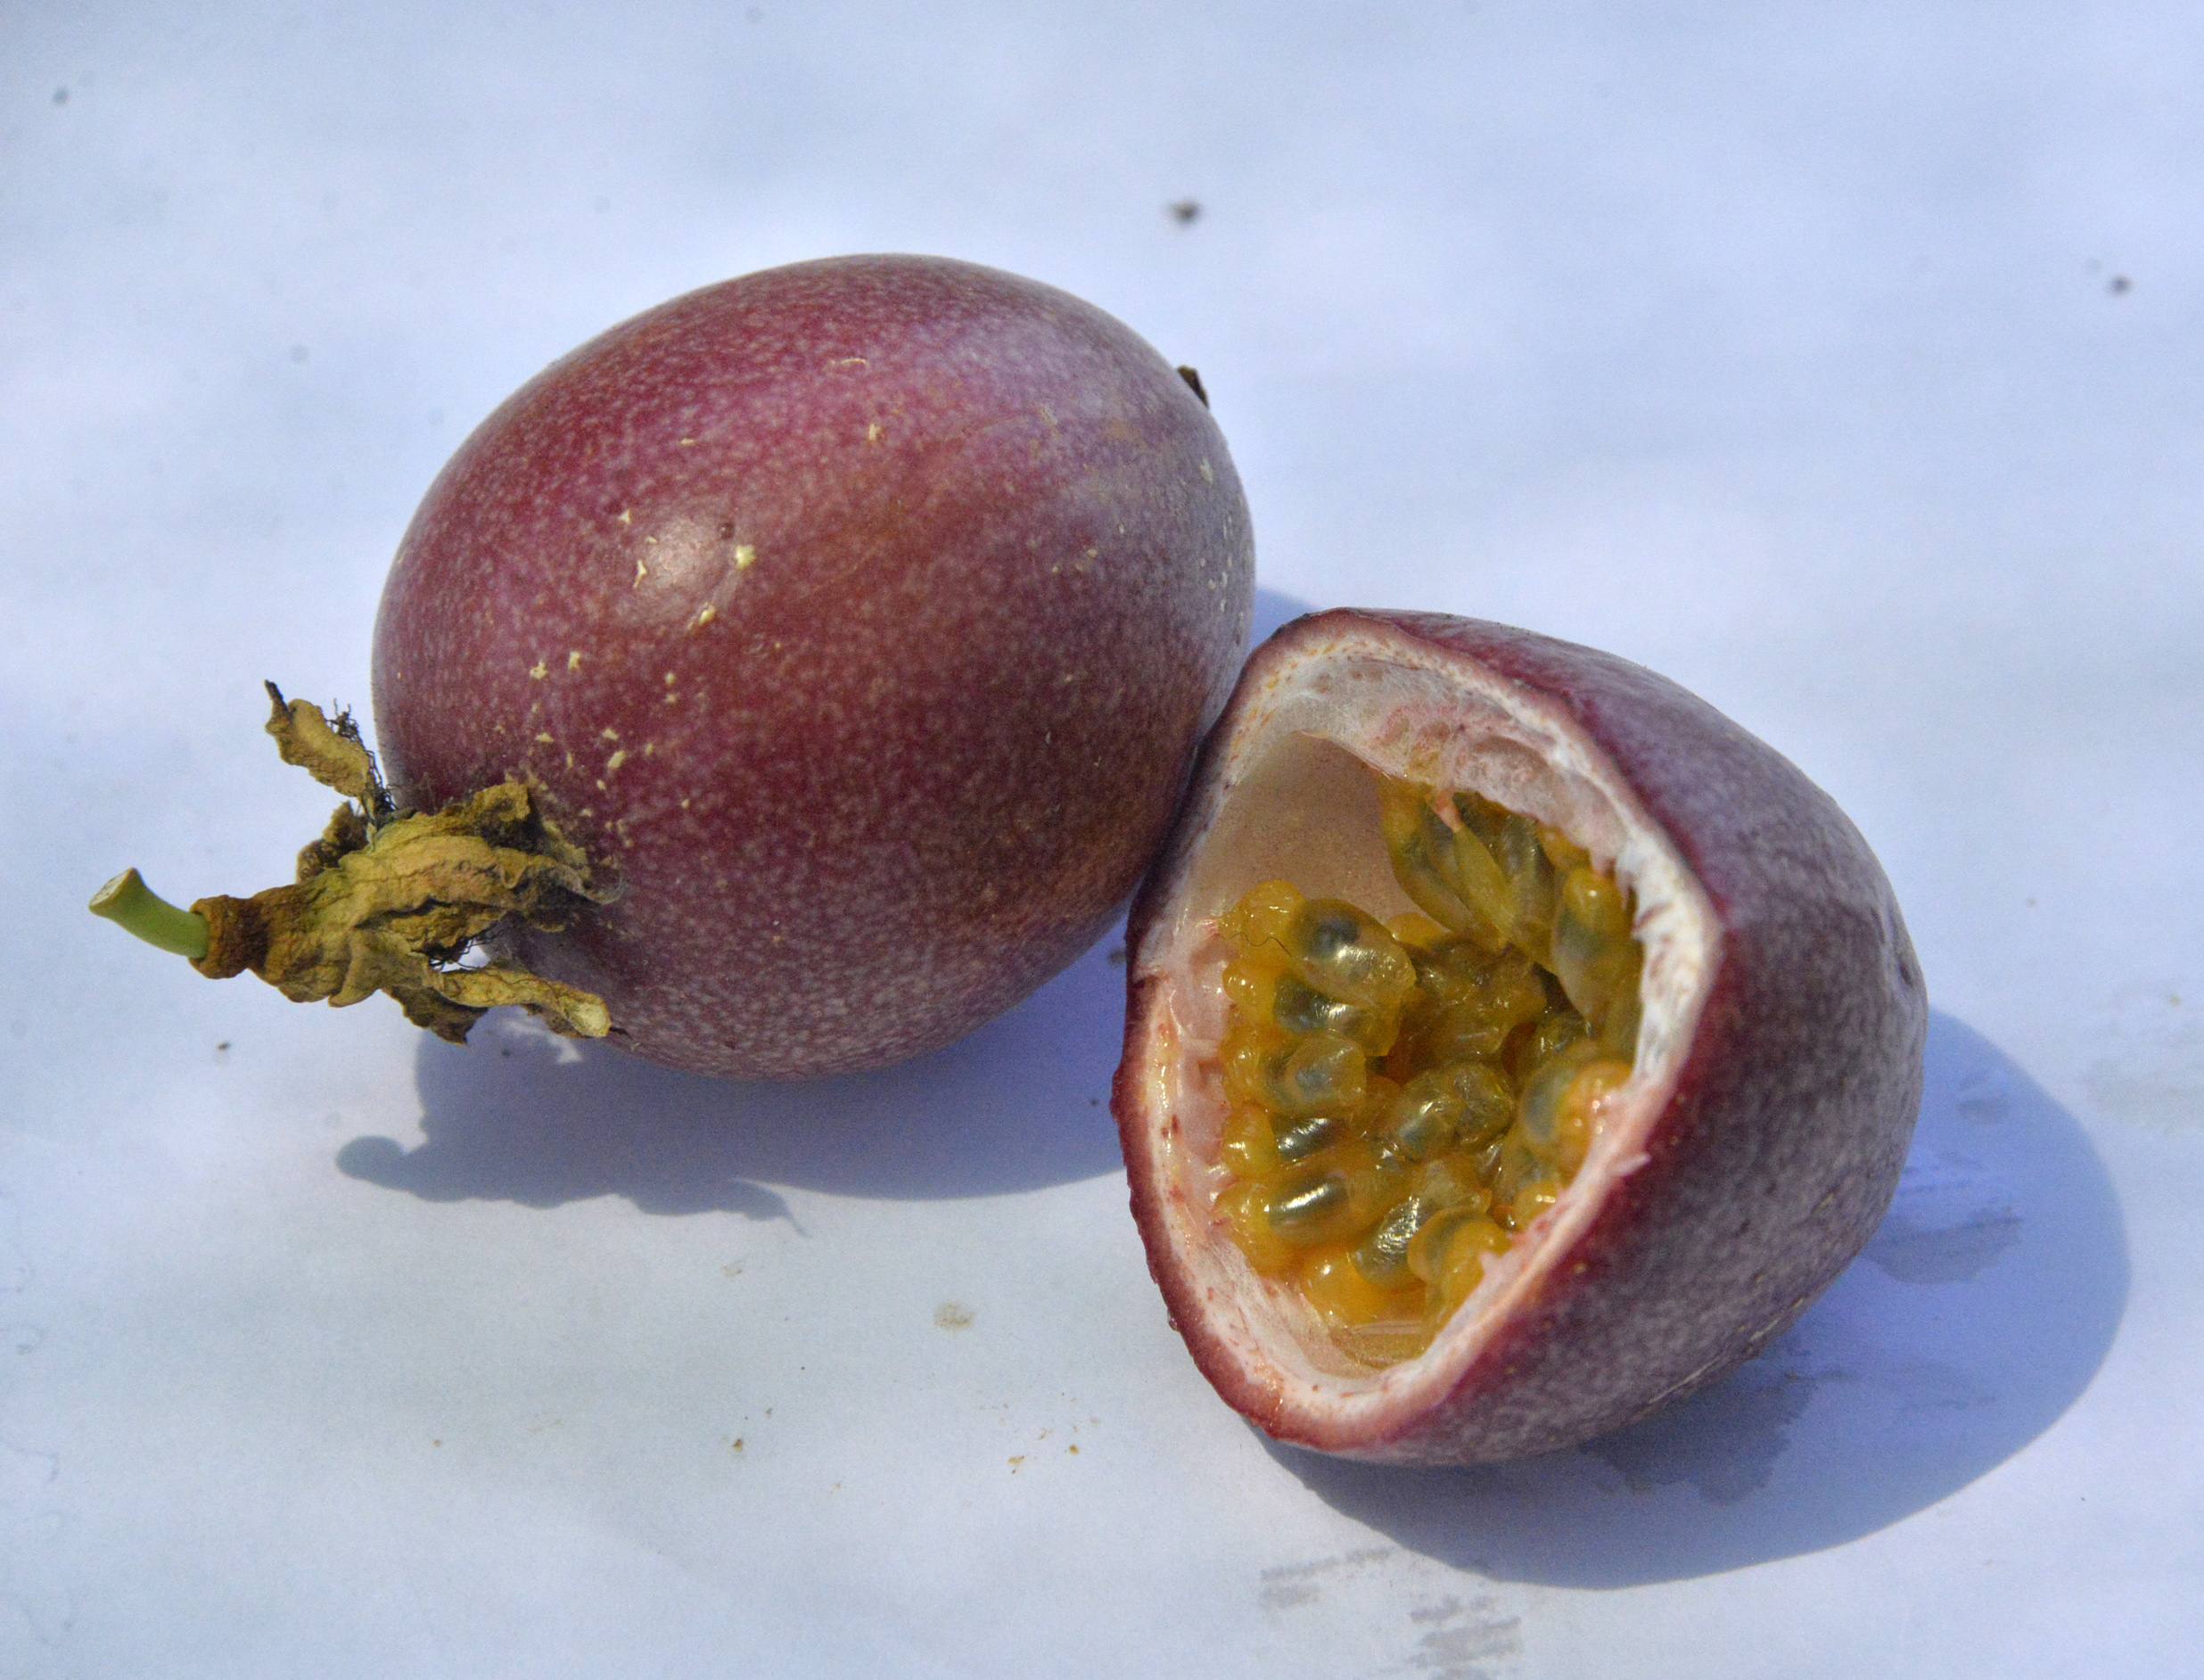 passiflora-unlulerin-gozde-meyvesi-oldu-7042-dhaphoto8.jpg